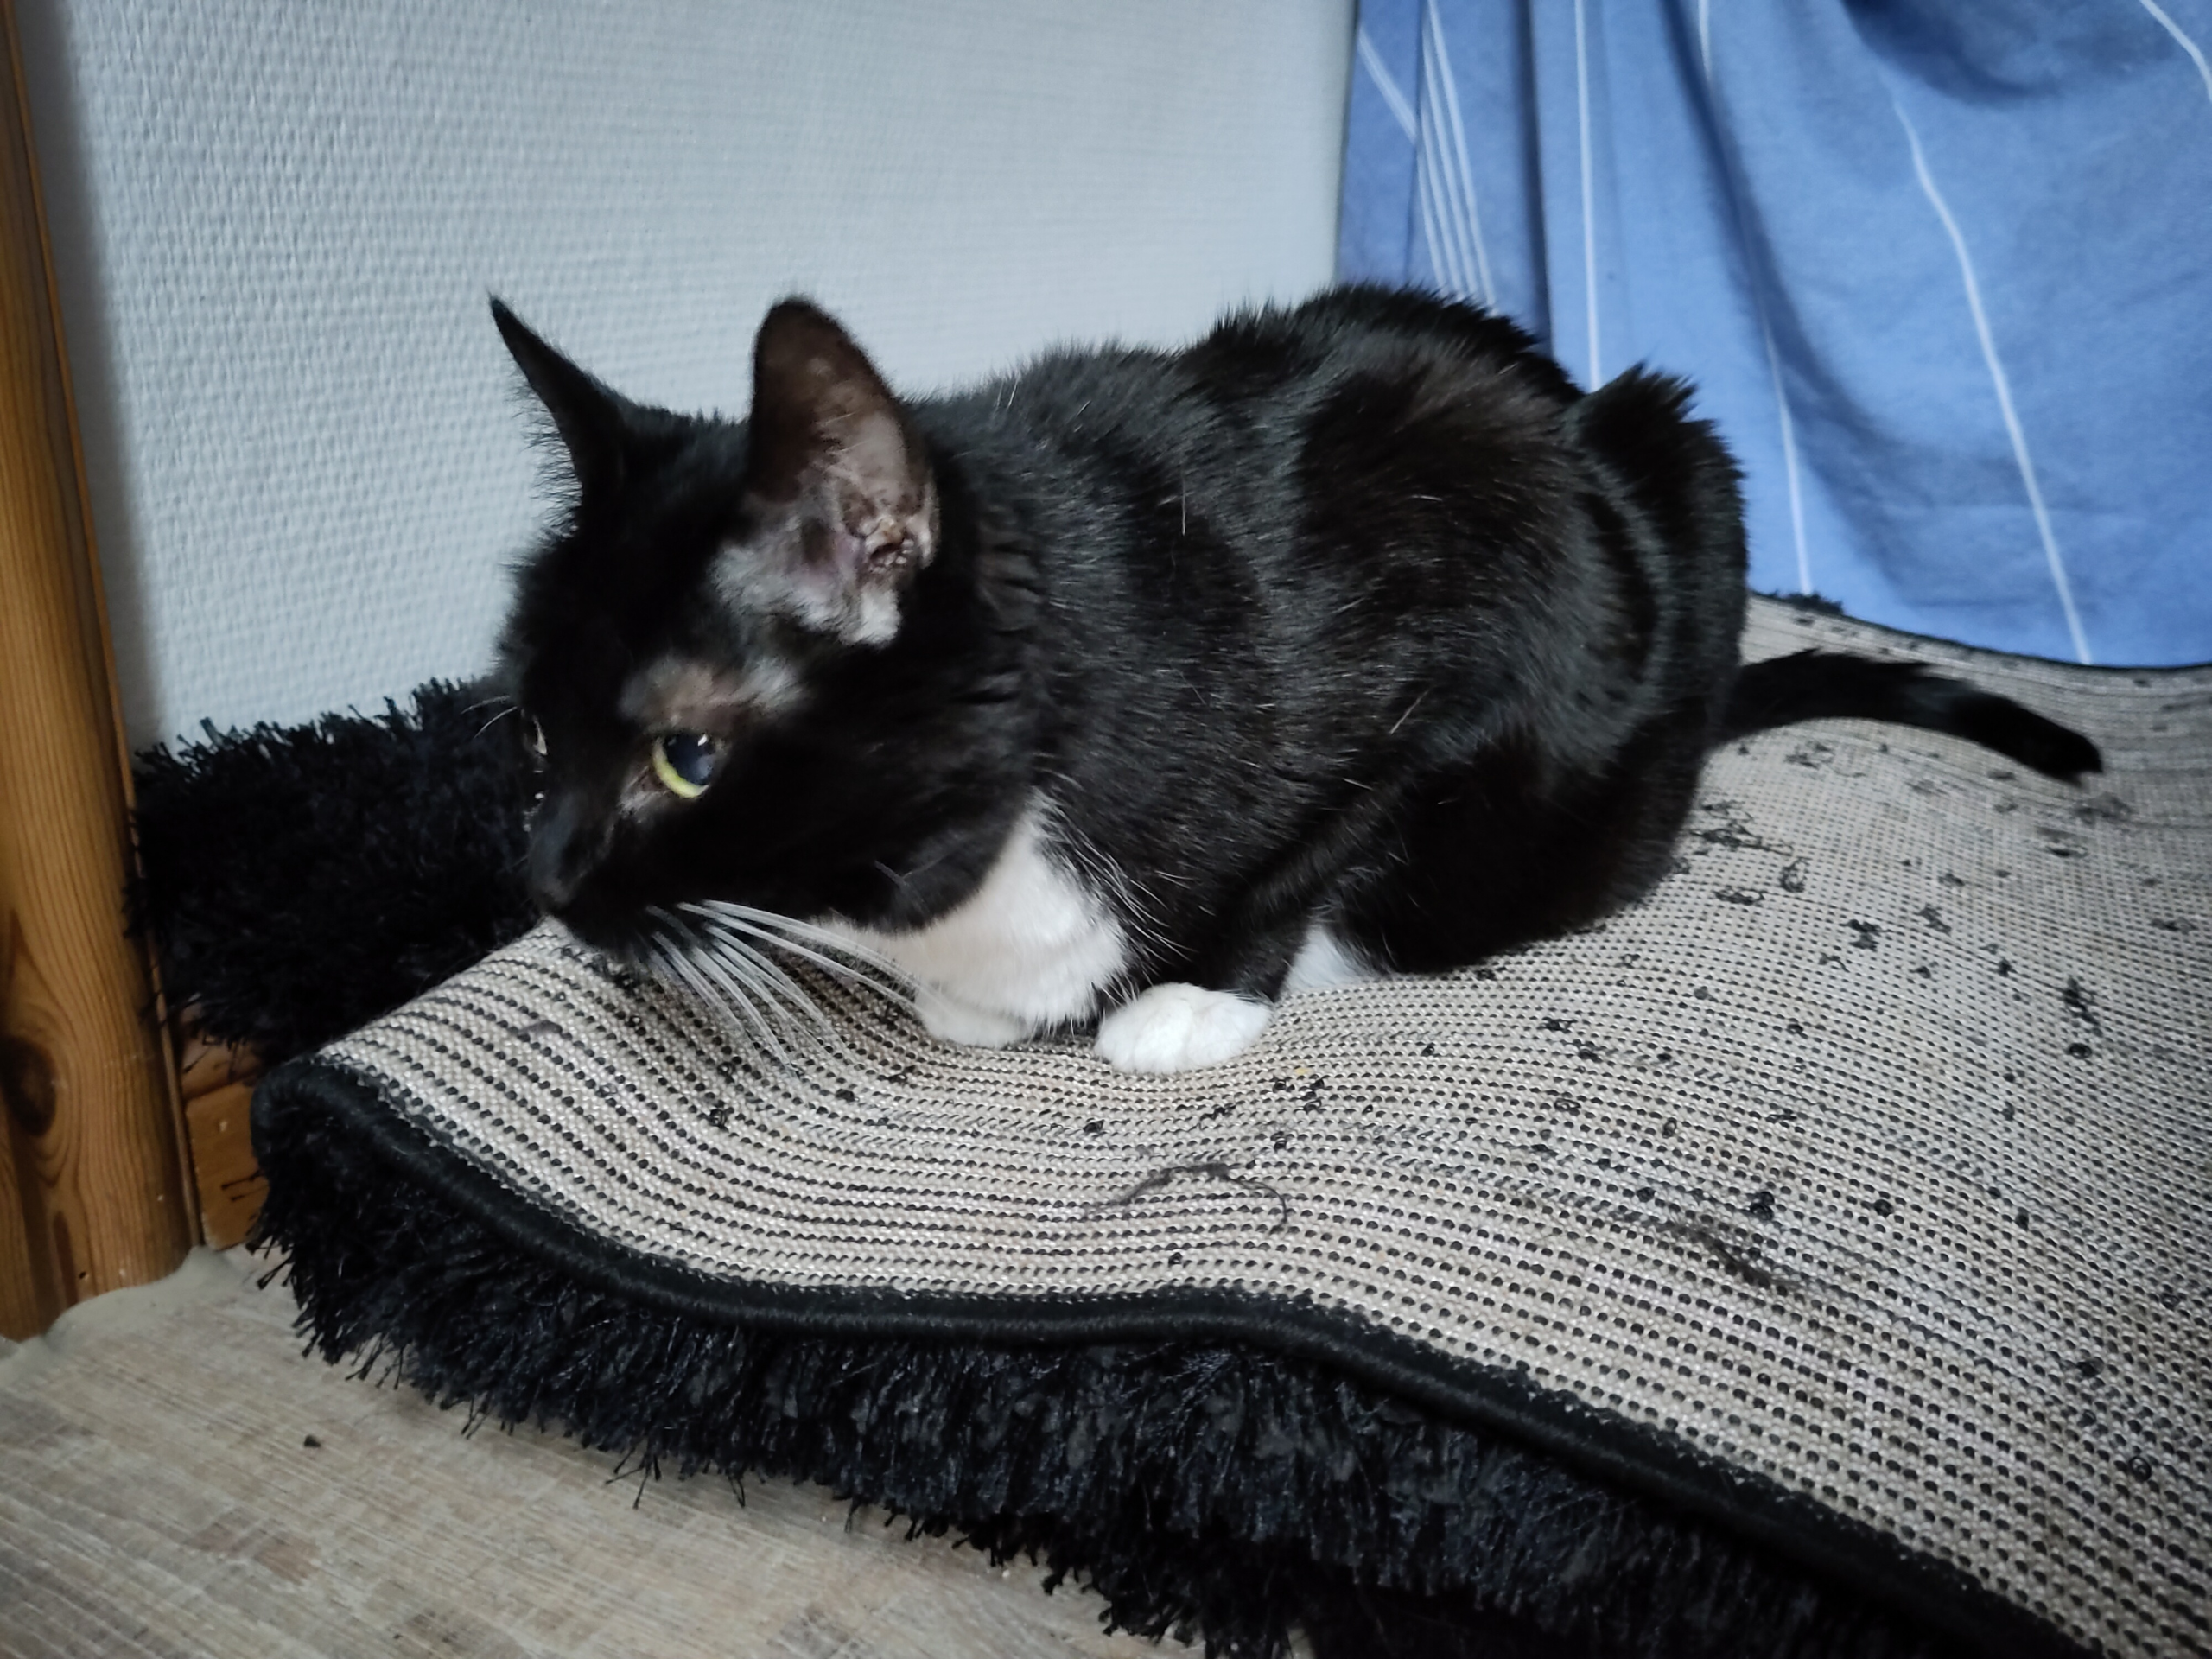 Aronia liegt auf einem Teppich und schaut sehr aufmerksam.